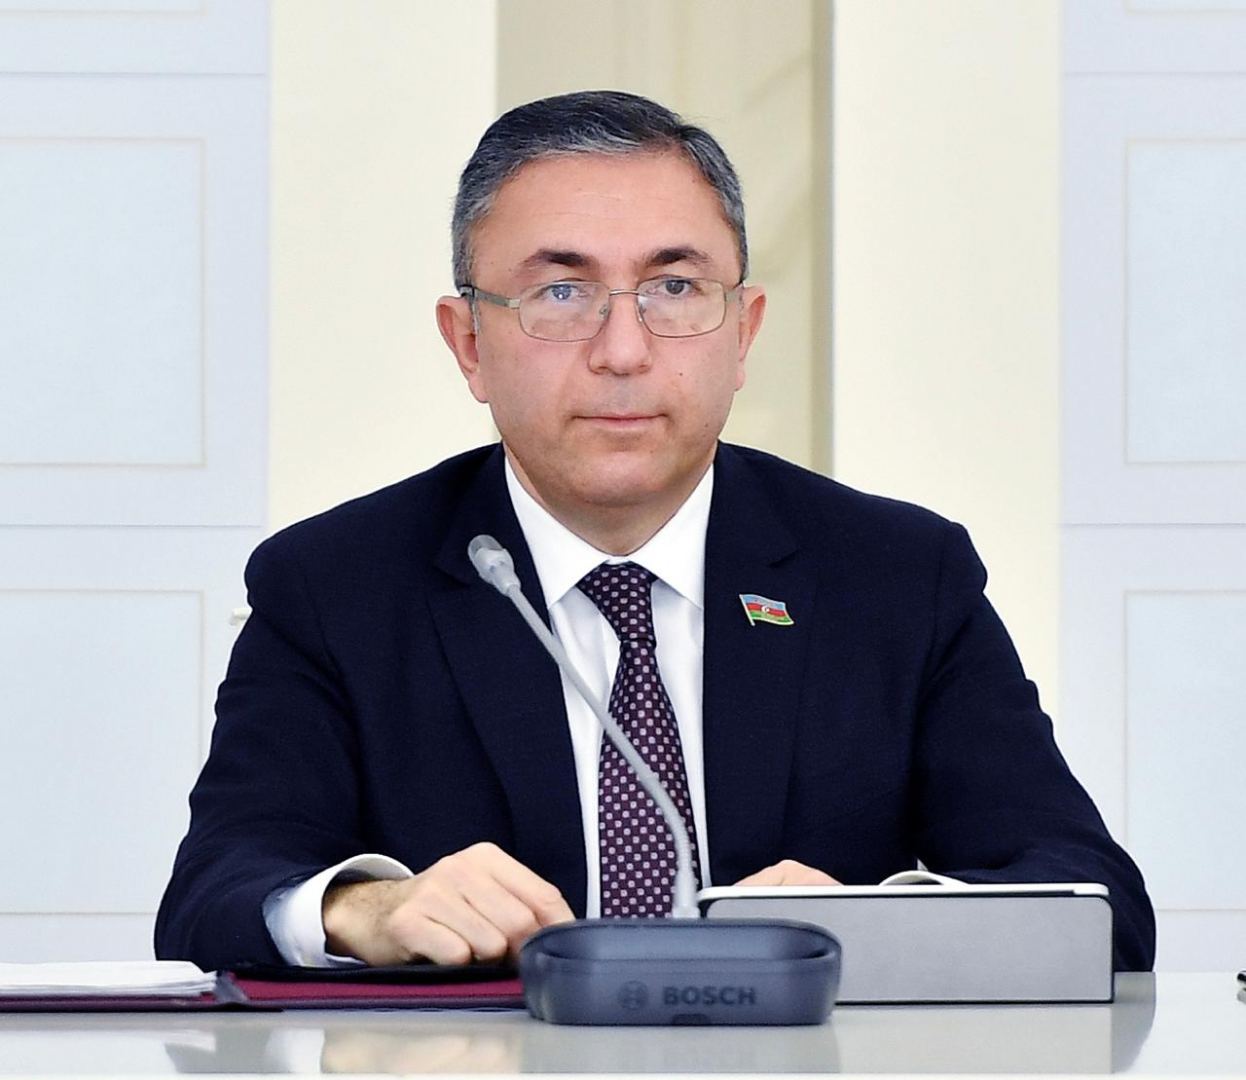 Good opportunities exist for co-op - Azerbaijan's MP says in Yerevan